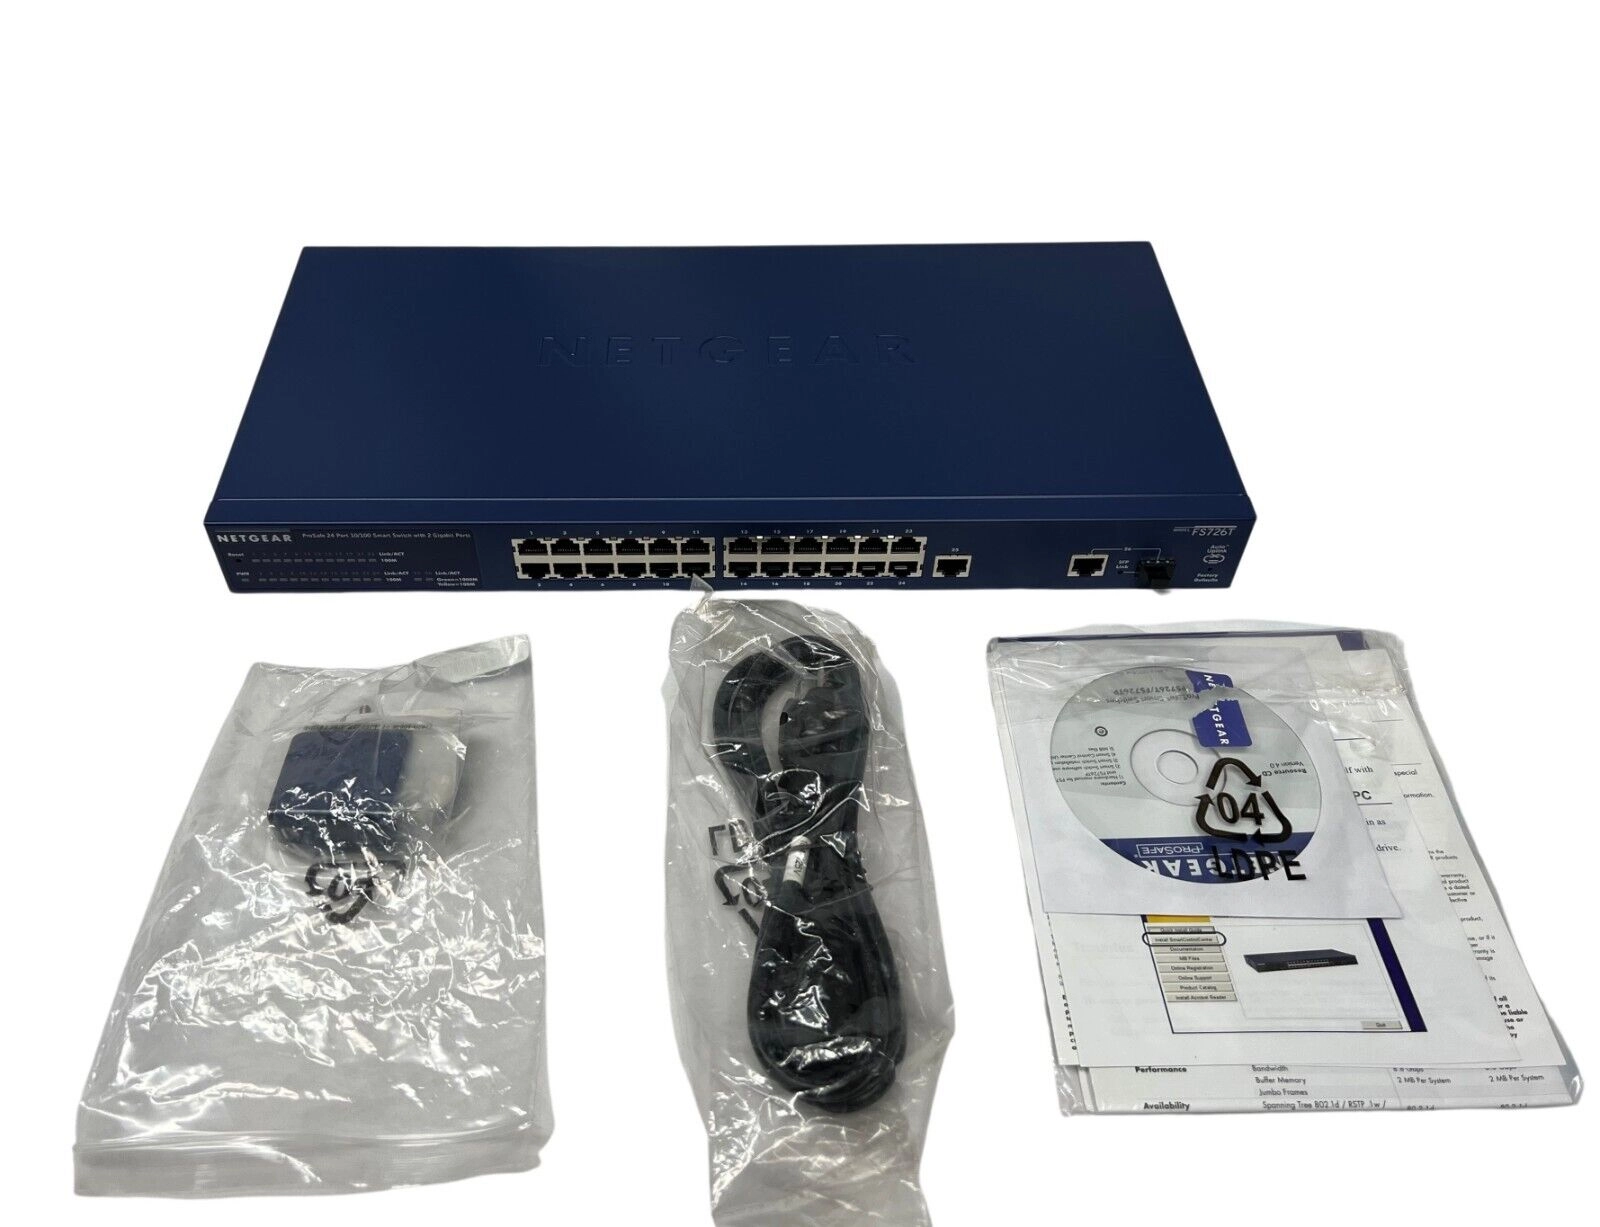 NETGEAR Ethernet Prosafe 24 Port 10/100 Mbps Smart